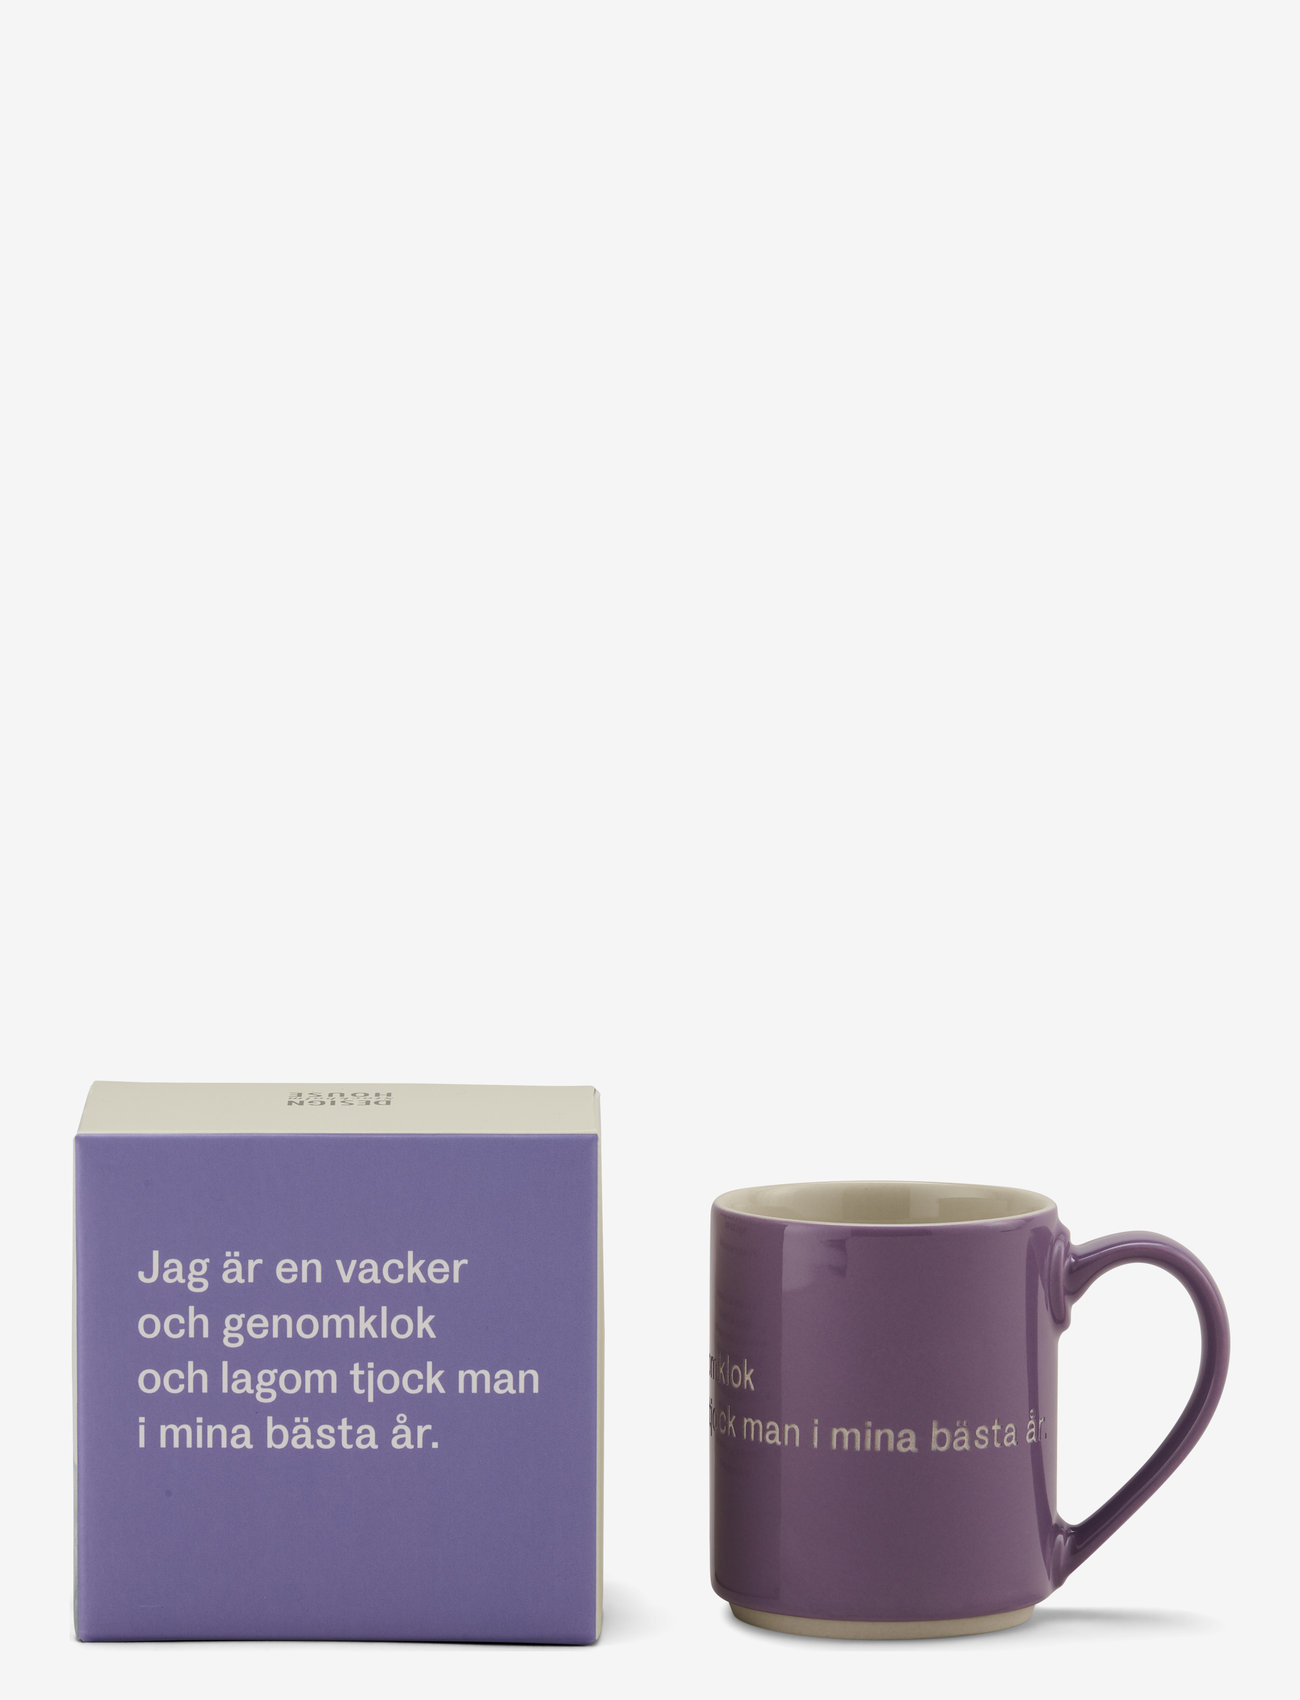 Design House Stockholm - Astrid  Lindgren mug - lowest prices - purple - 0